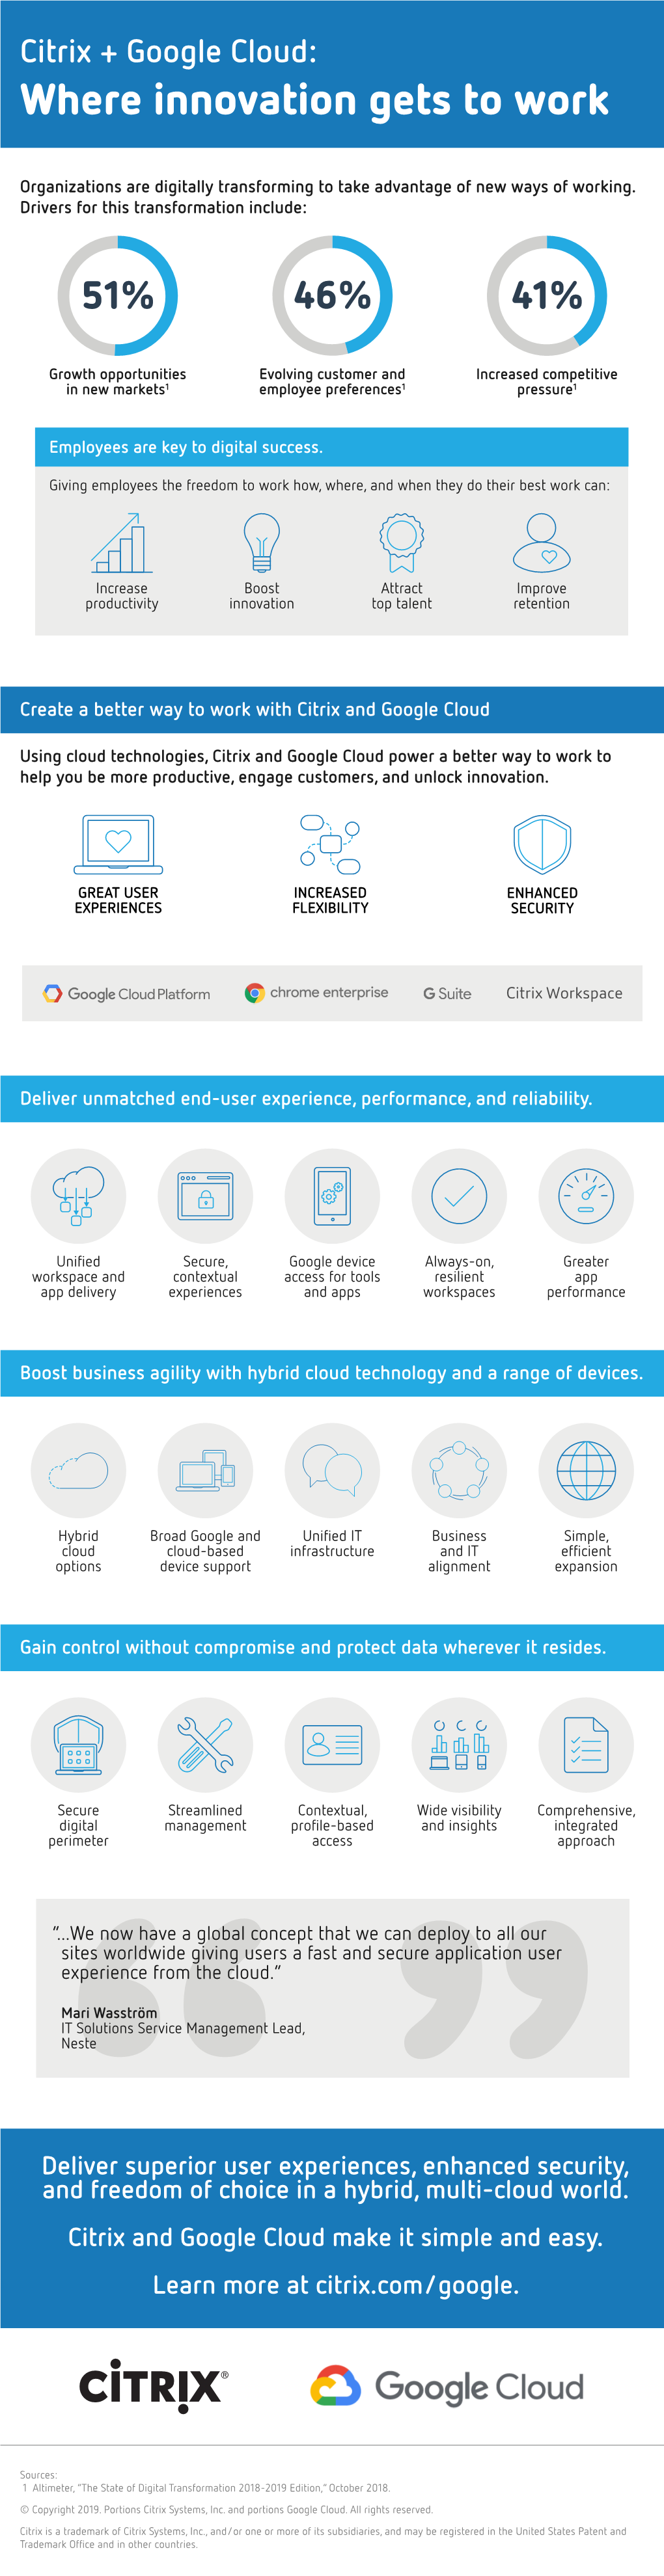 Citrix-Google Cloud Infographic